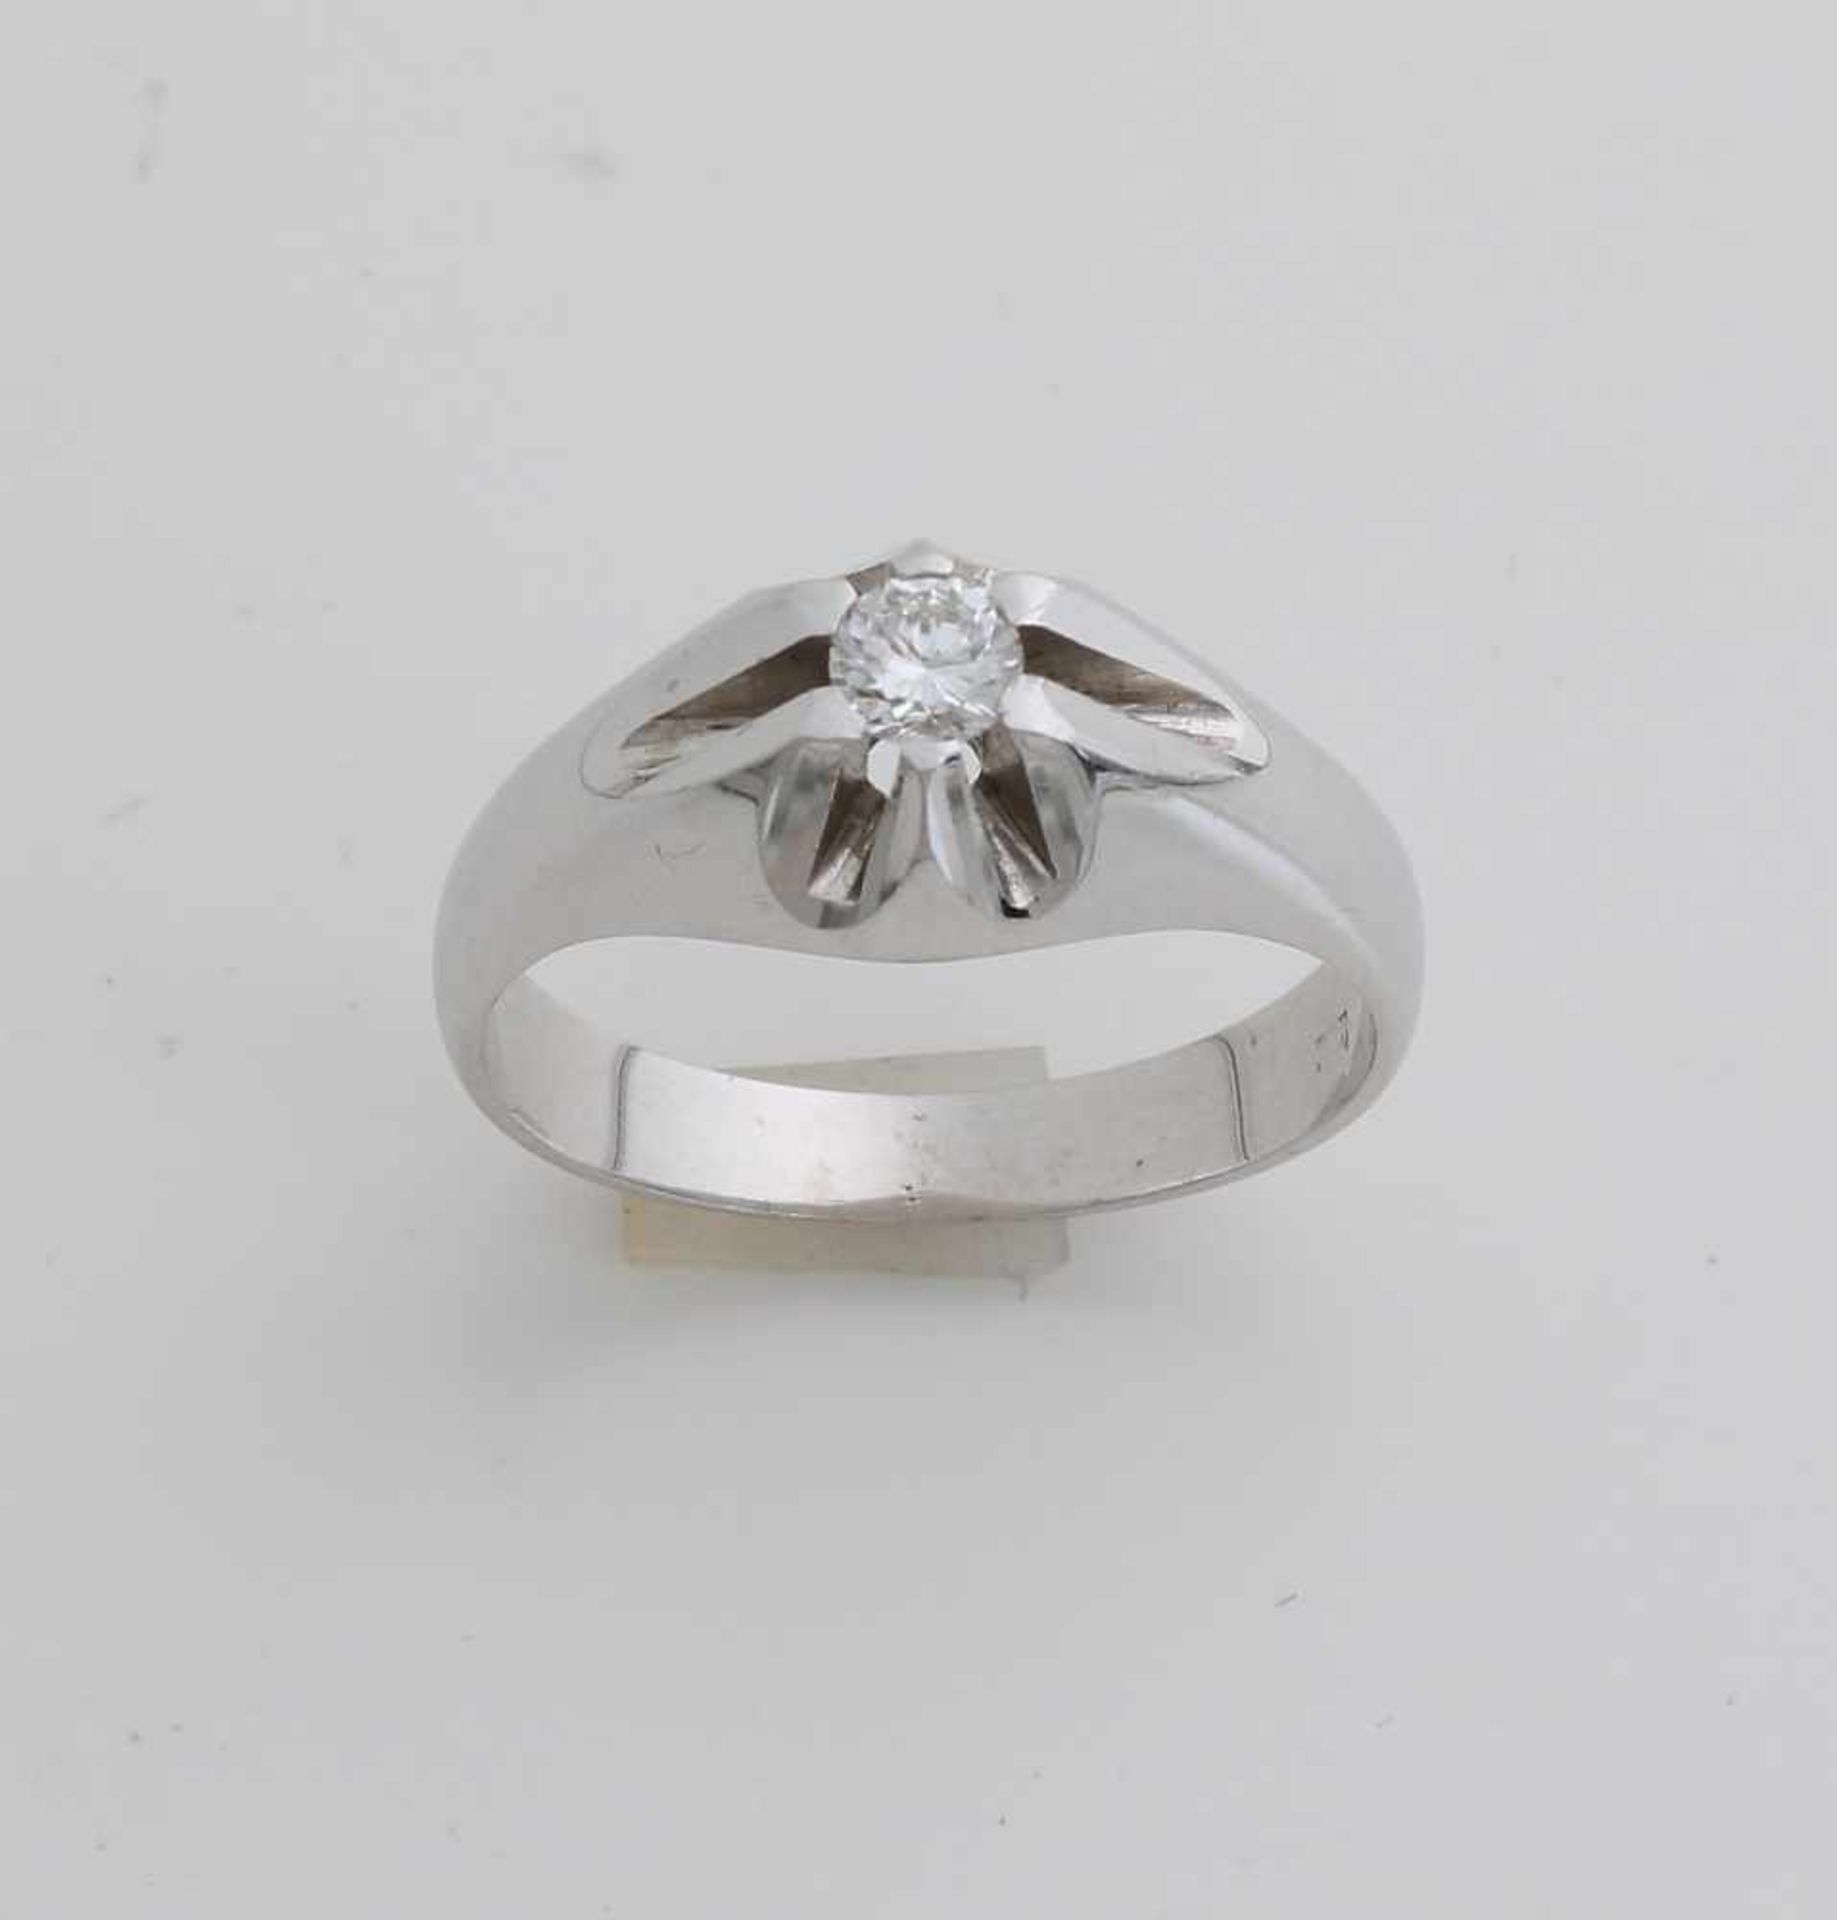 Weißgoldring, 585/000, mit Diamant. Ring mit Tiffany-Fassung mit einem Diamanten im Brillantschlif